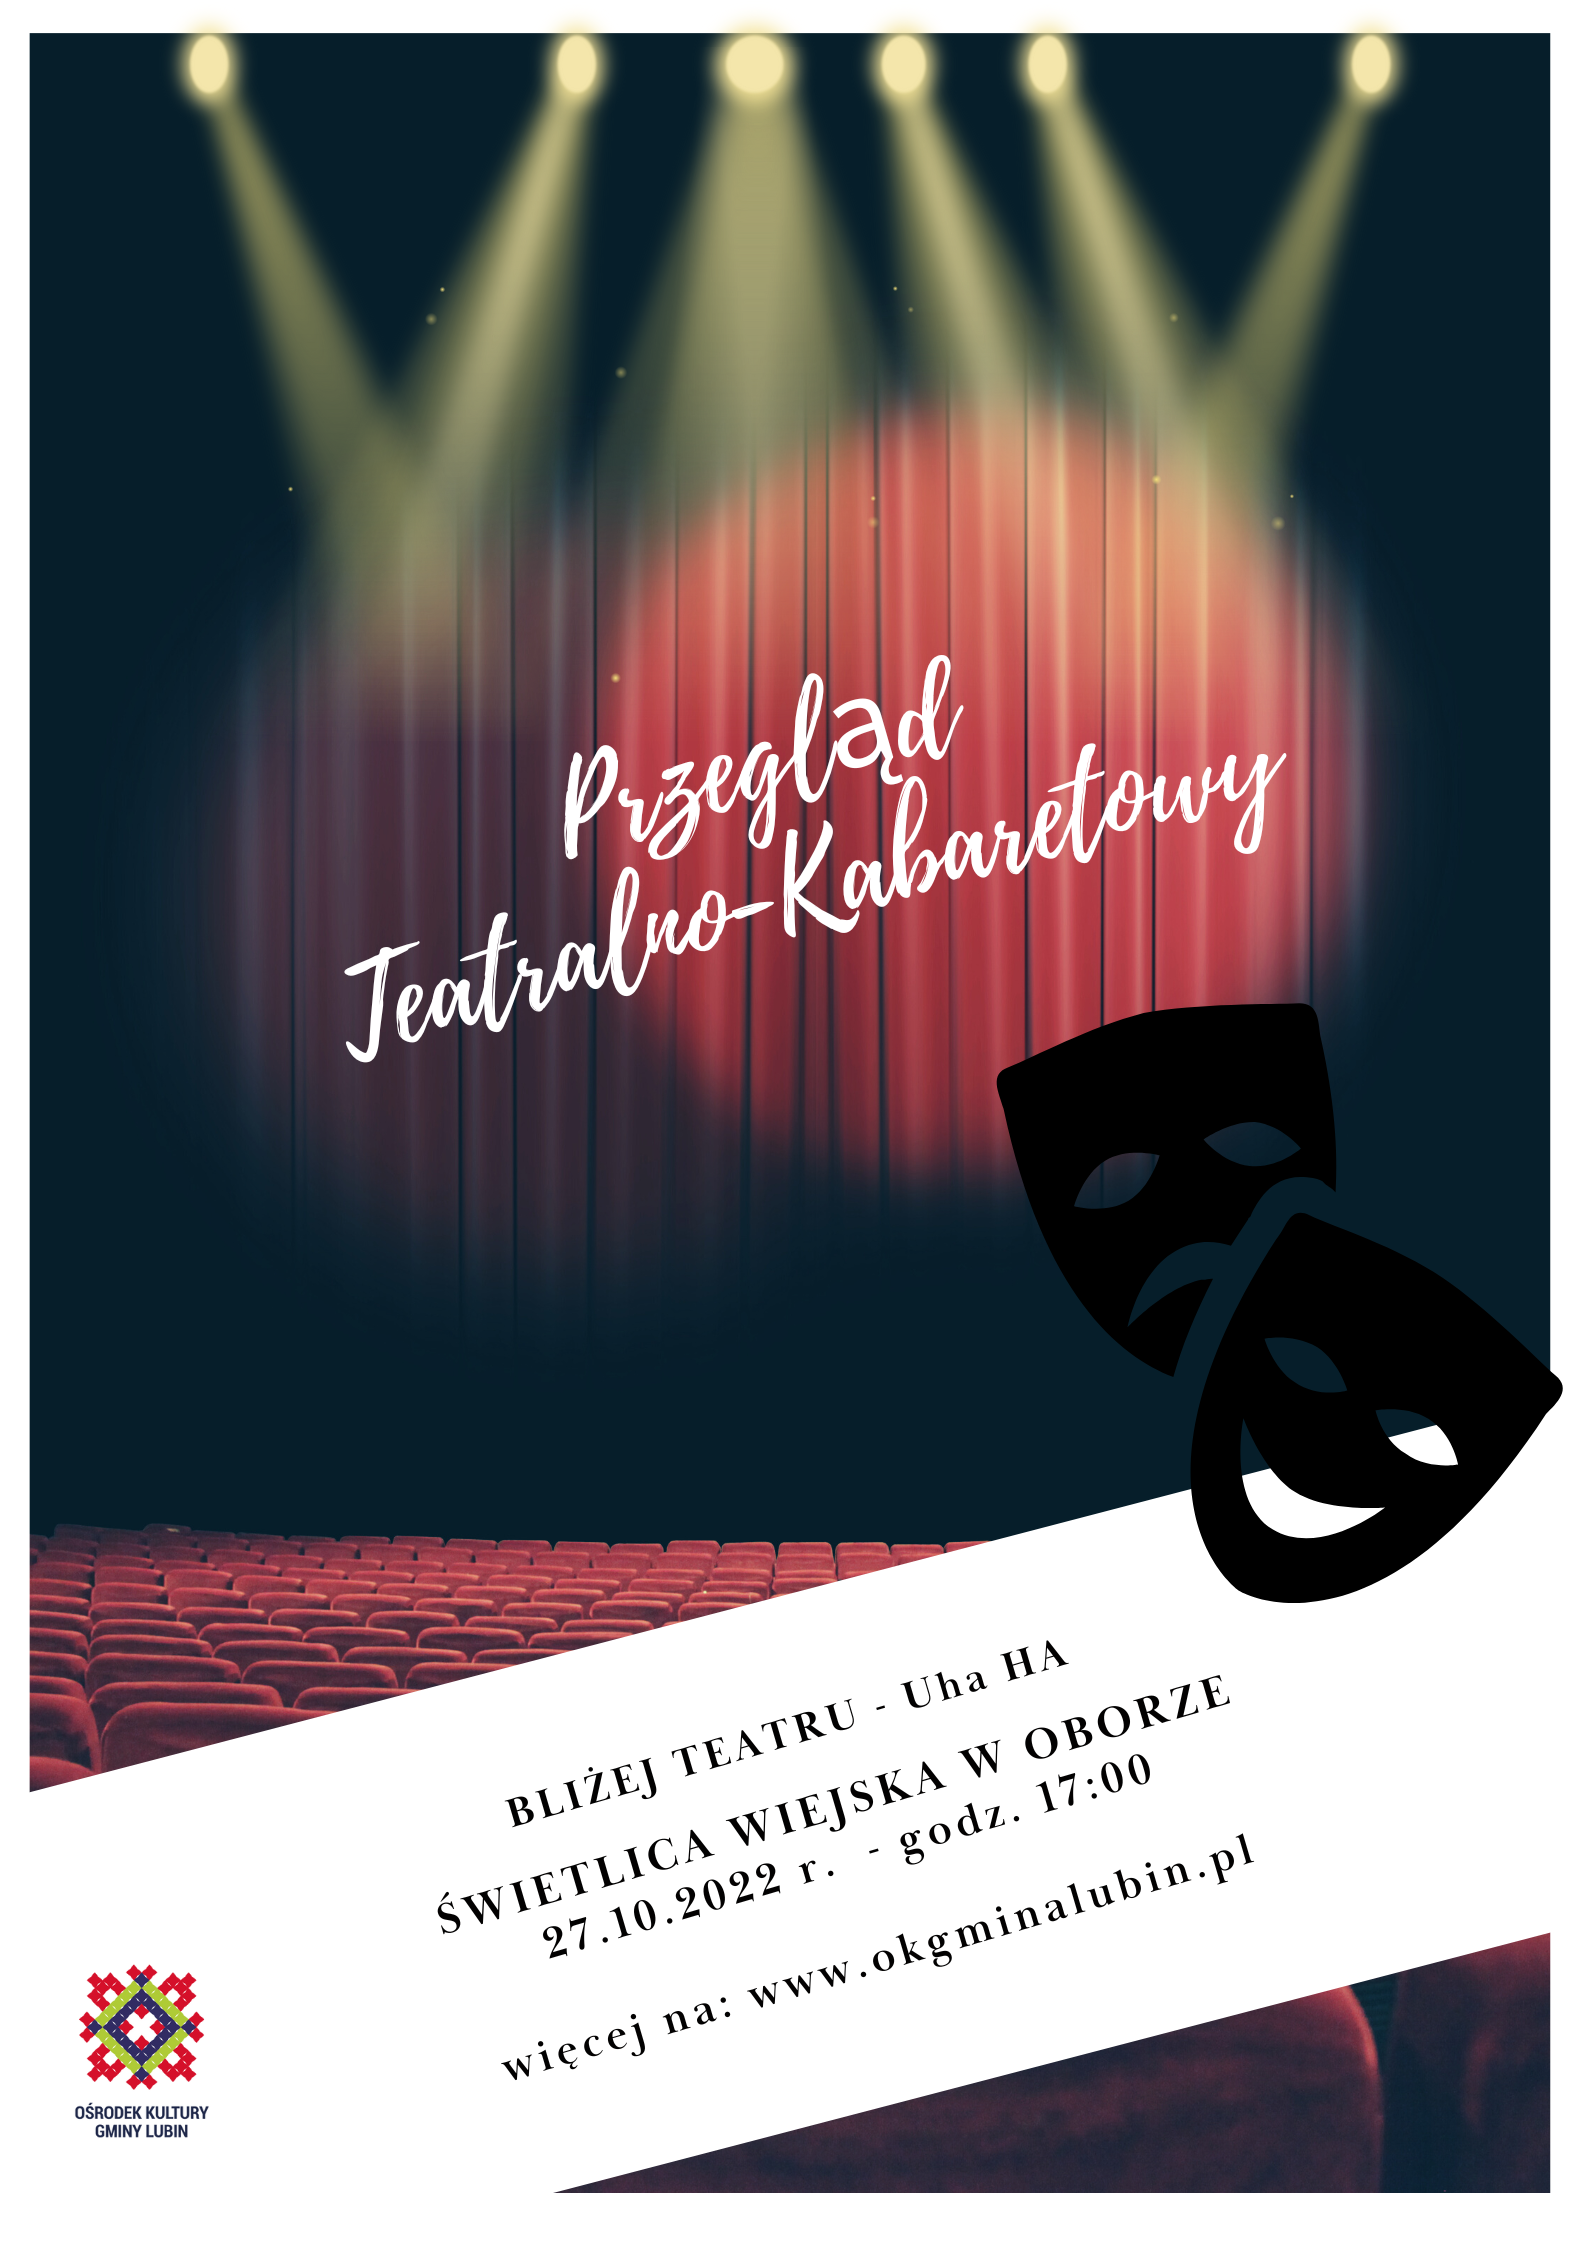 plakat promujący przegląd teatralno-kabaretowy w oborze w dniu 27.10.2022 na godzinę 17;00 na plakaie scena oraz maski teatralne